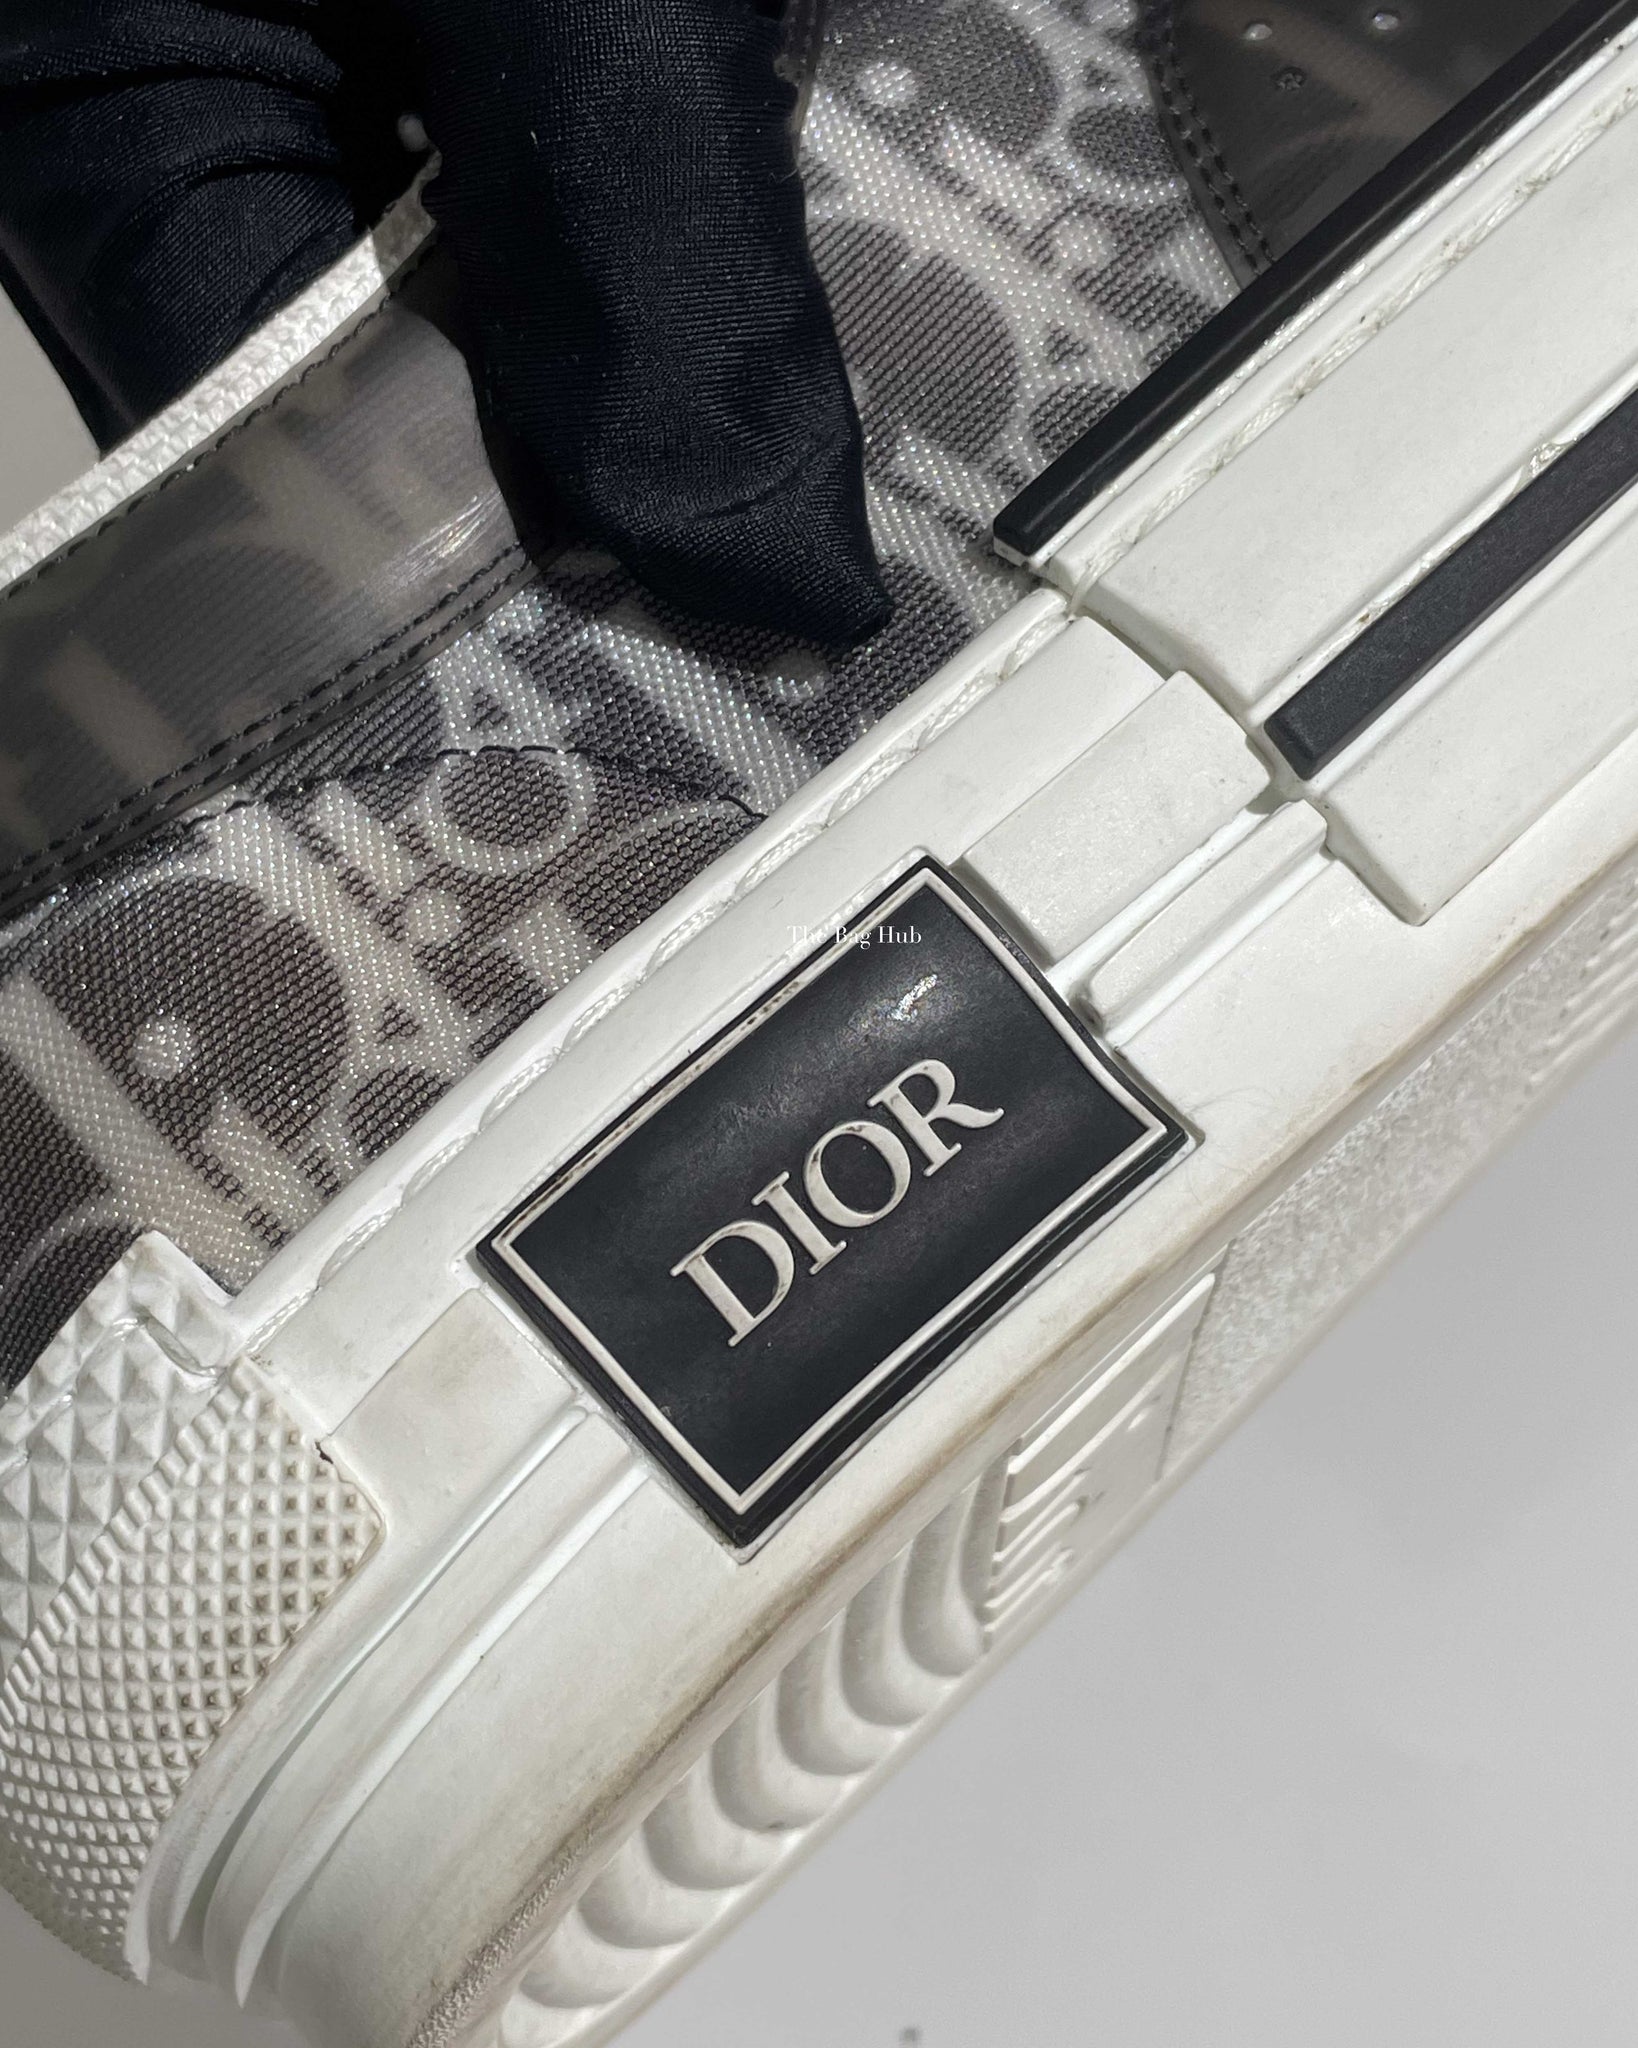 Dior Black/White Oblique Canvas Transparent B23 Low Top Sneakers Size 44-11